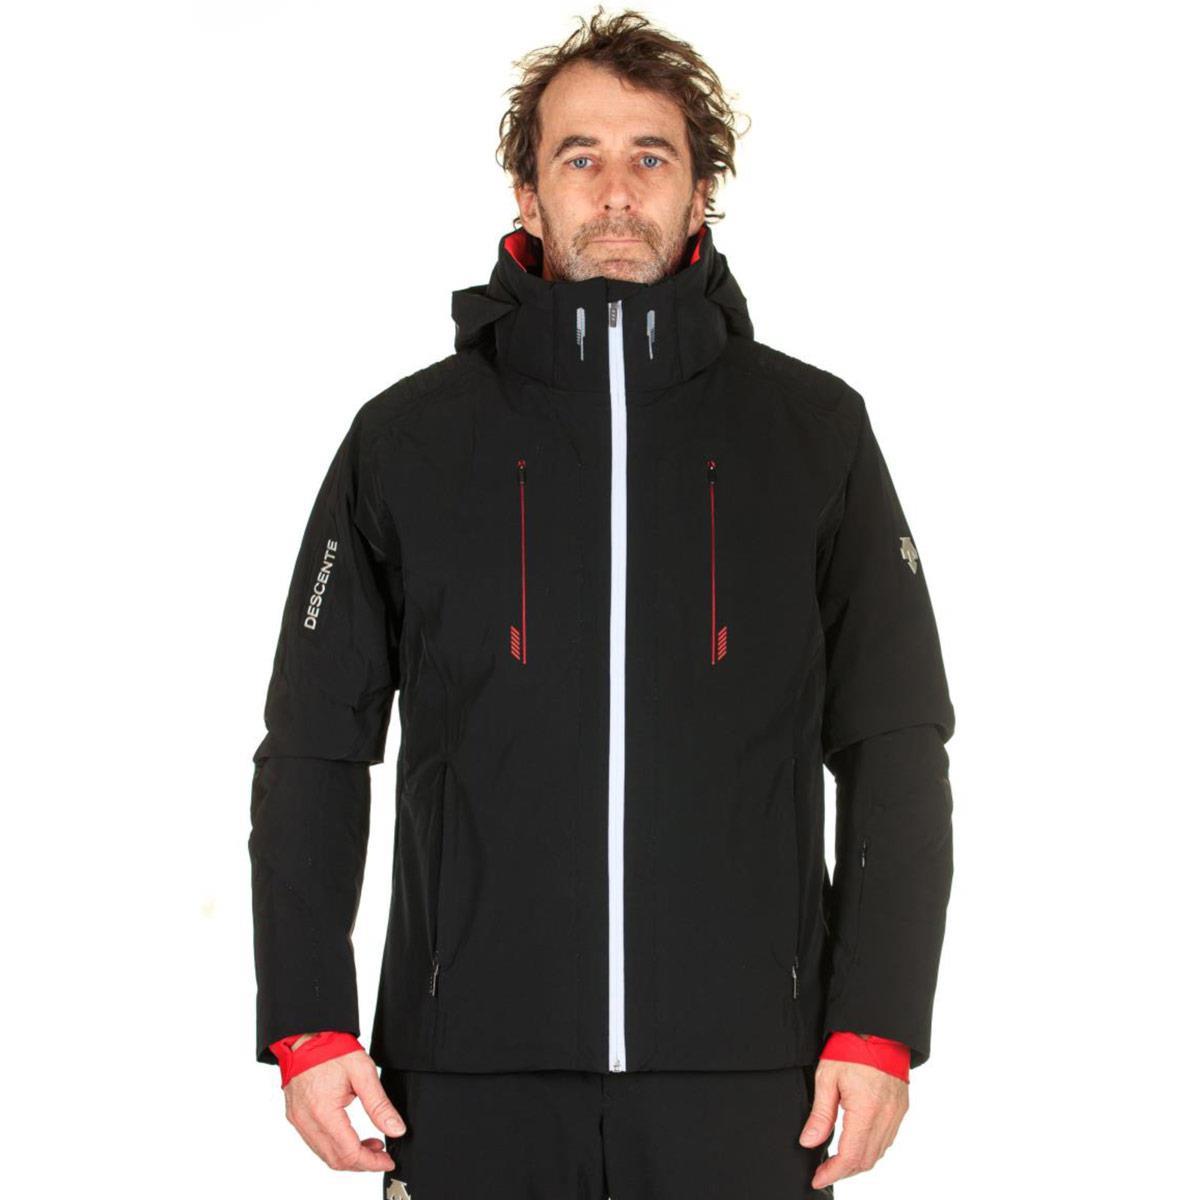 Descente Swiss Insulated Jacket - Men's | Skis.com